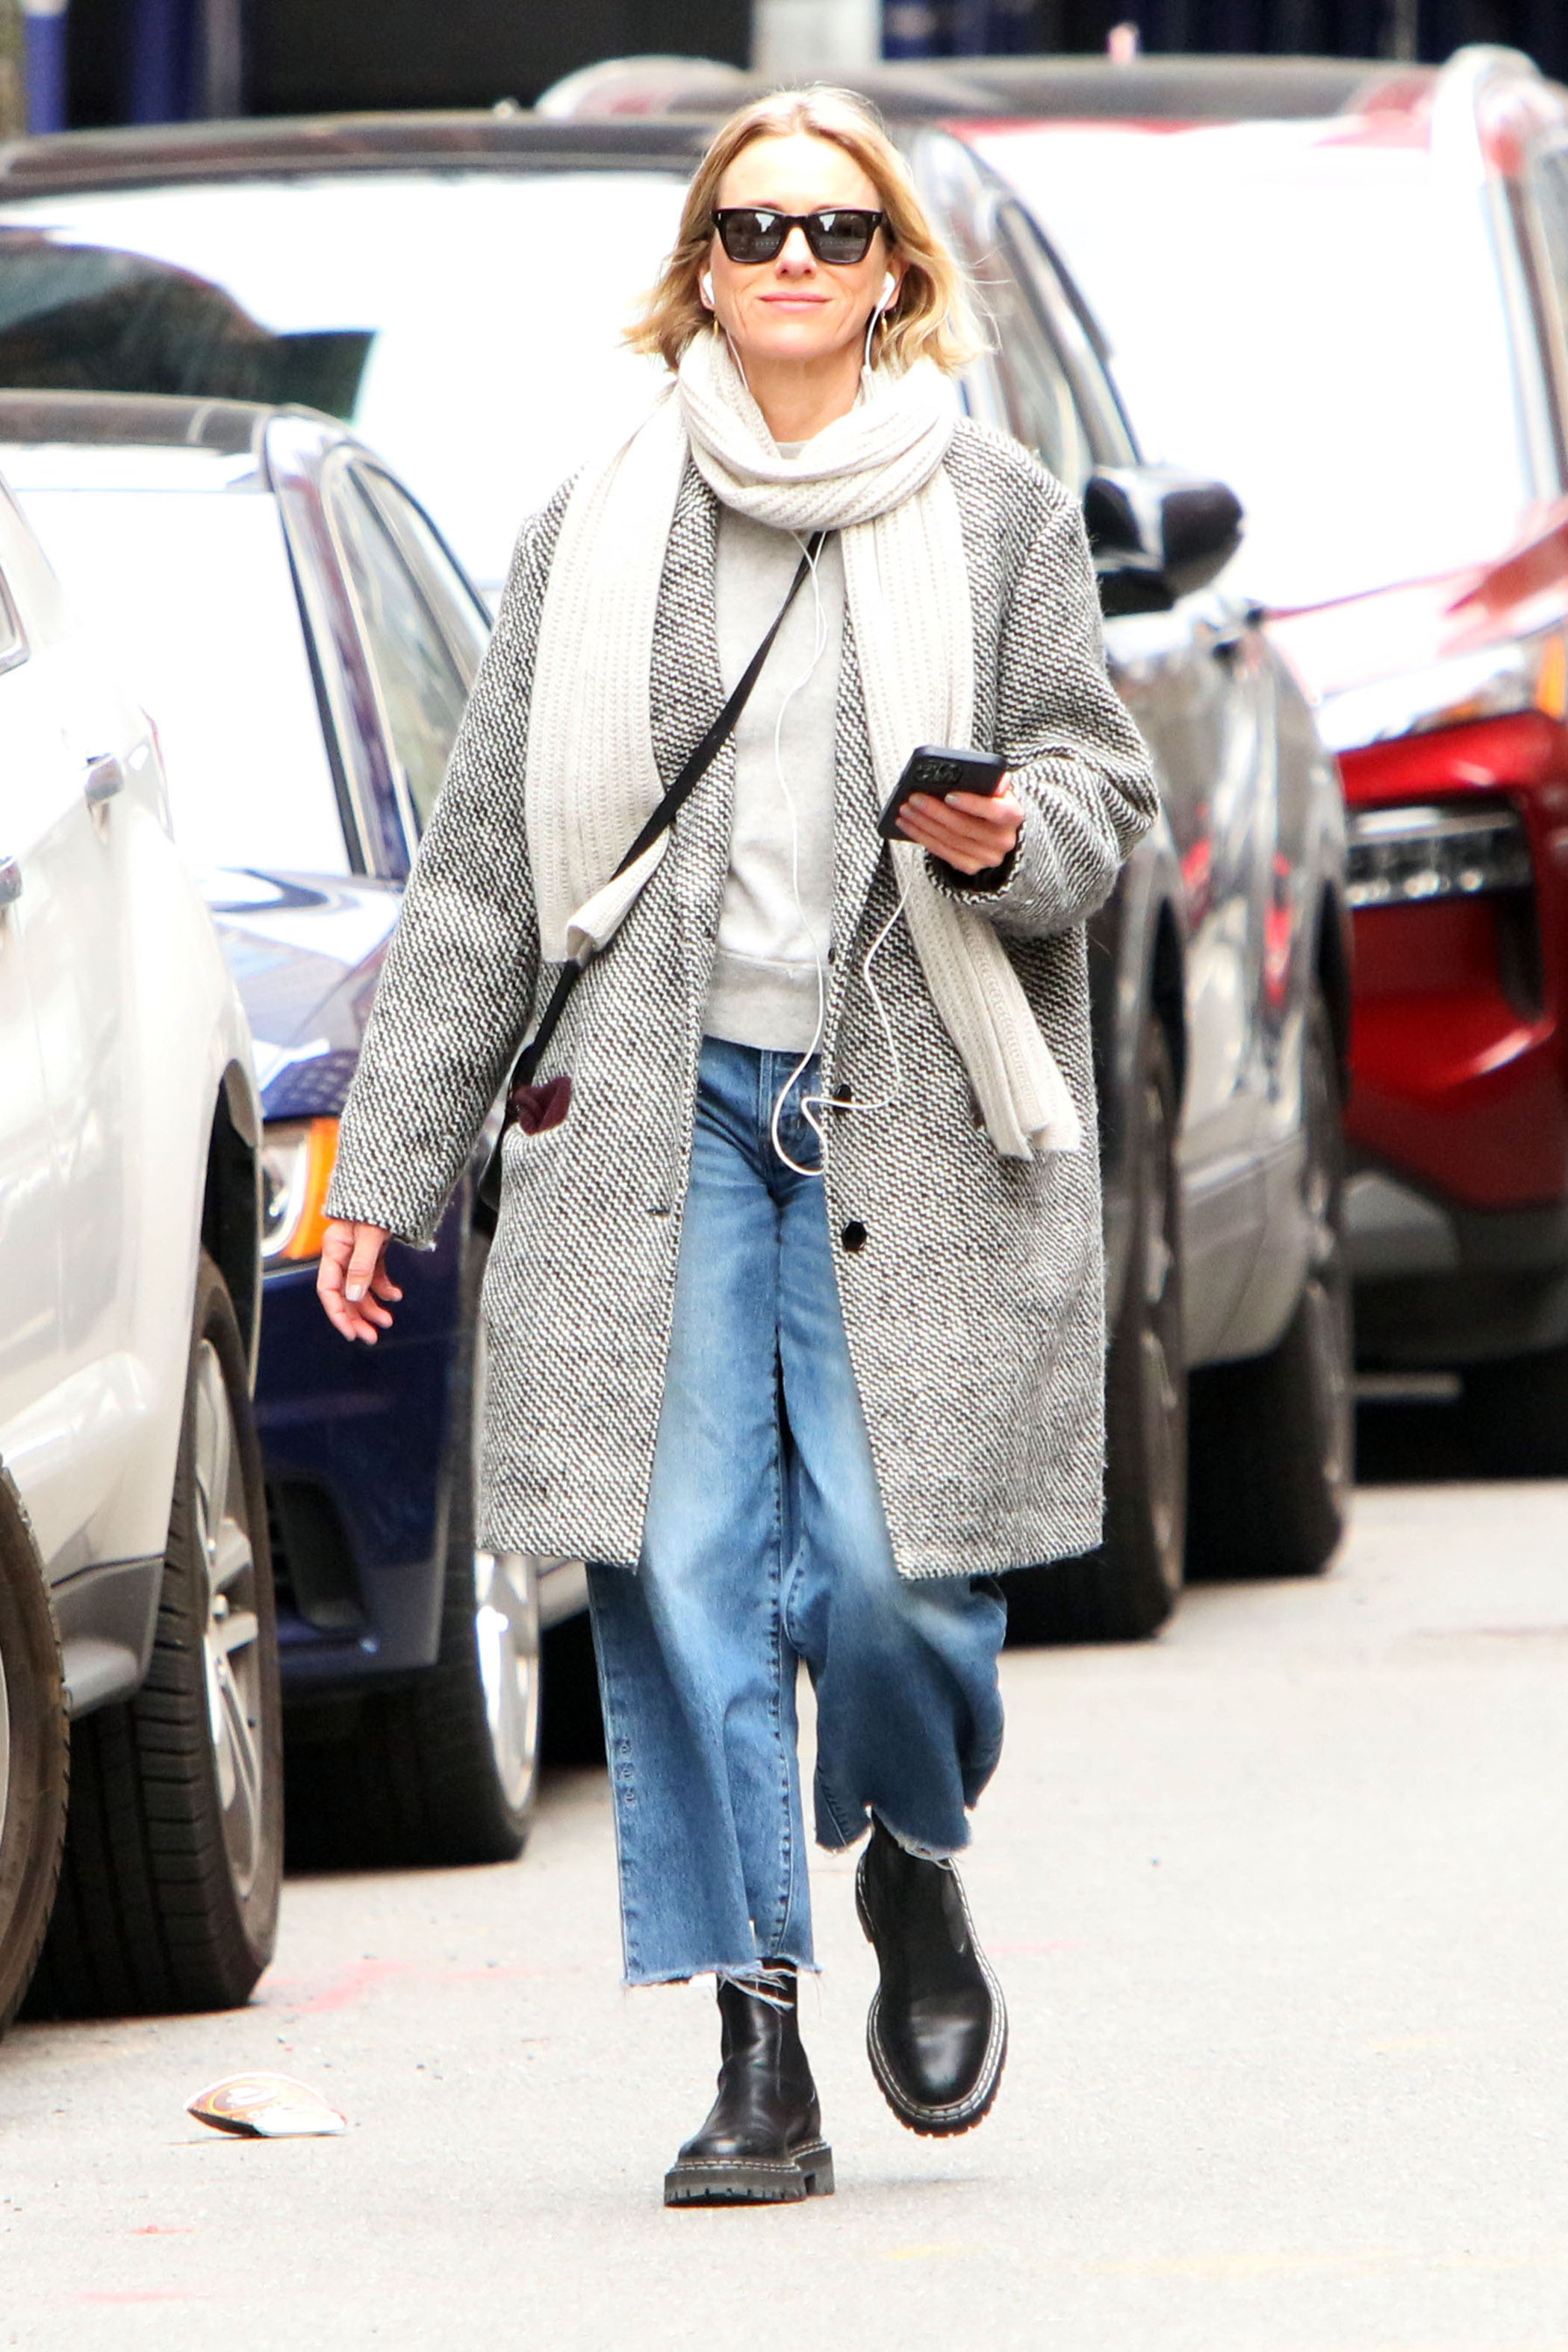 Día de compras. Naomi Watts recorrió las tiendas más exclusivas del barrio Soho en Nueva York mientras dio un paseo. Lució un look casual: remera blanca, jean, tapado gris y bufanda. Además, llevó puestos los auriculares, lentes de sol y una bandolera negra de cuero que combinó con sus botas